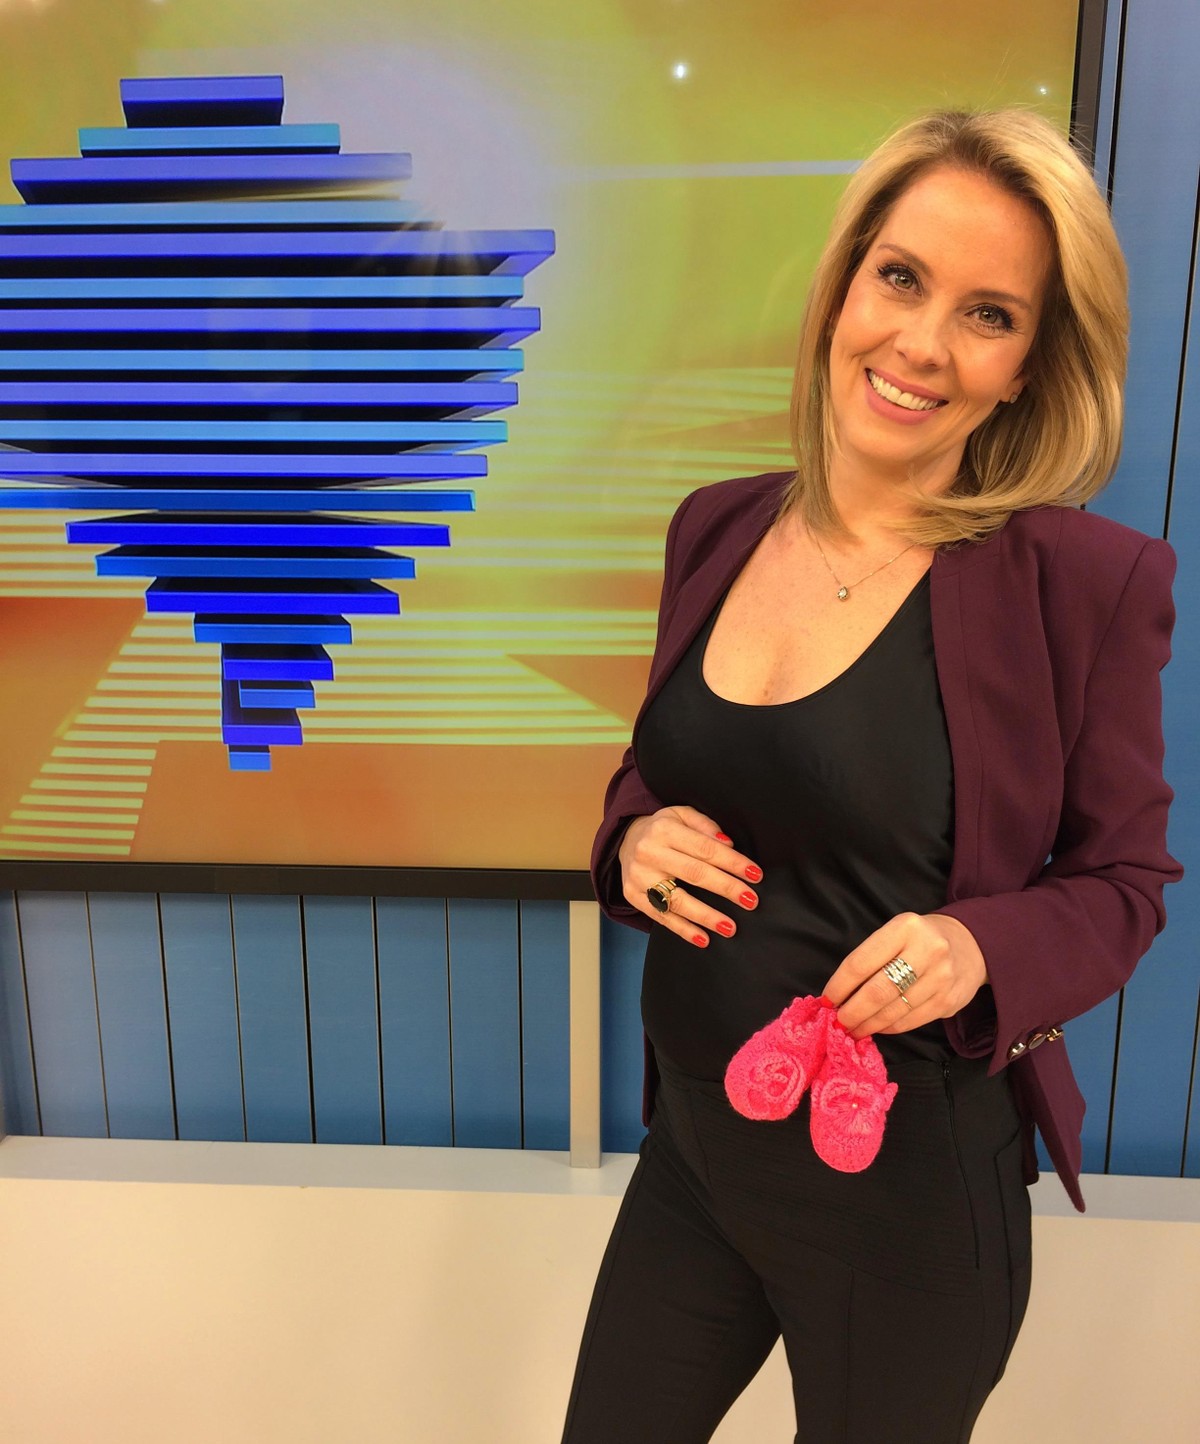 Apresentadora do Bom Dia Rio Grande, Daniela Ungaretti comemora gravidez:  'Vai encher de vida e amor a nossa família' | RBS TV | Rede Globo